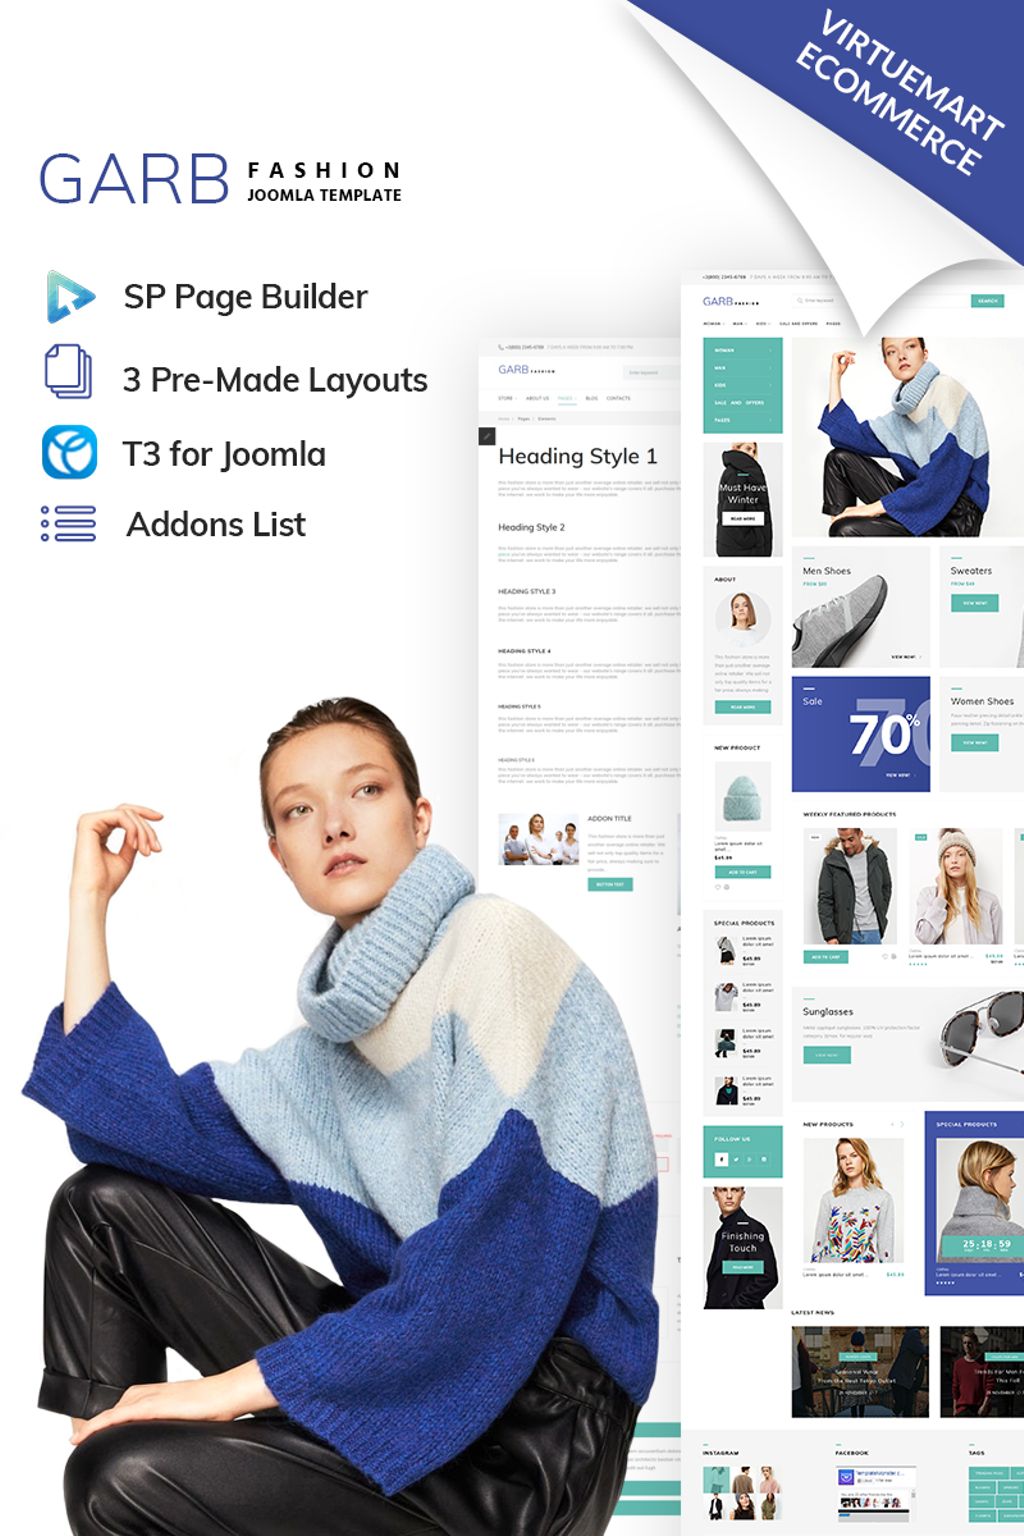  Garb Fashion - Fashion Store Joomla Template